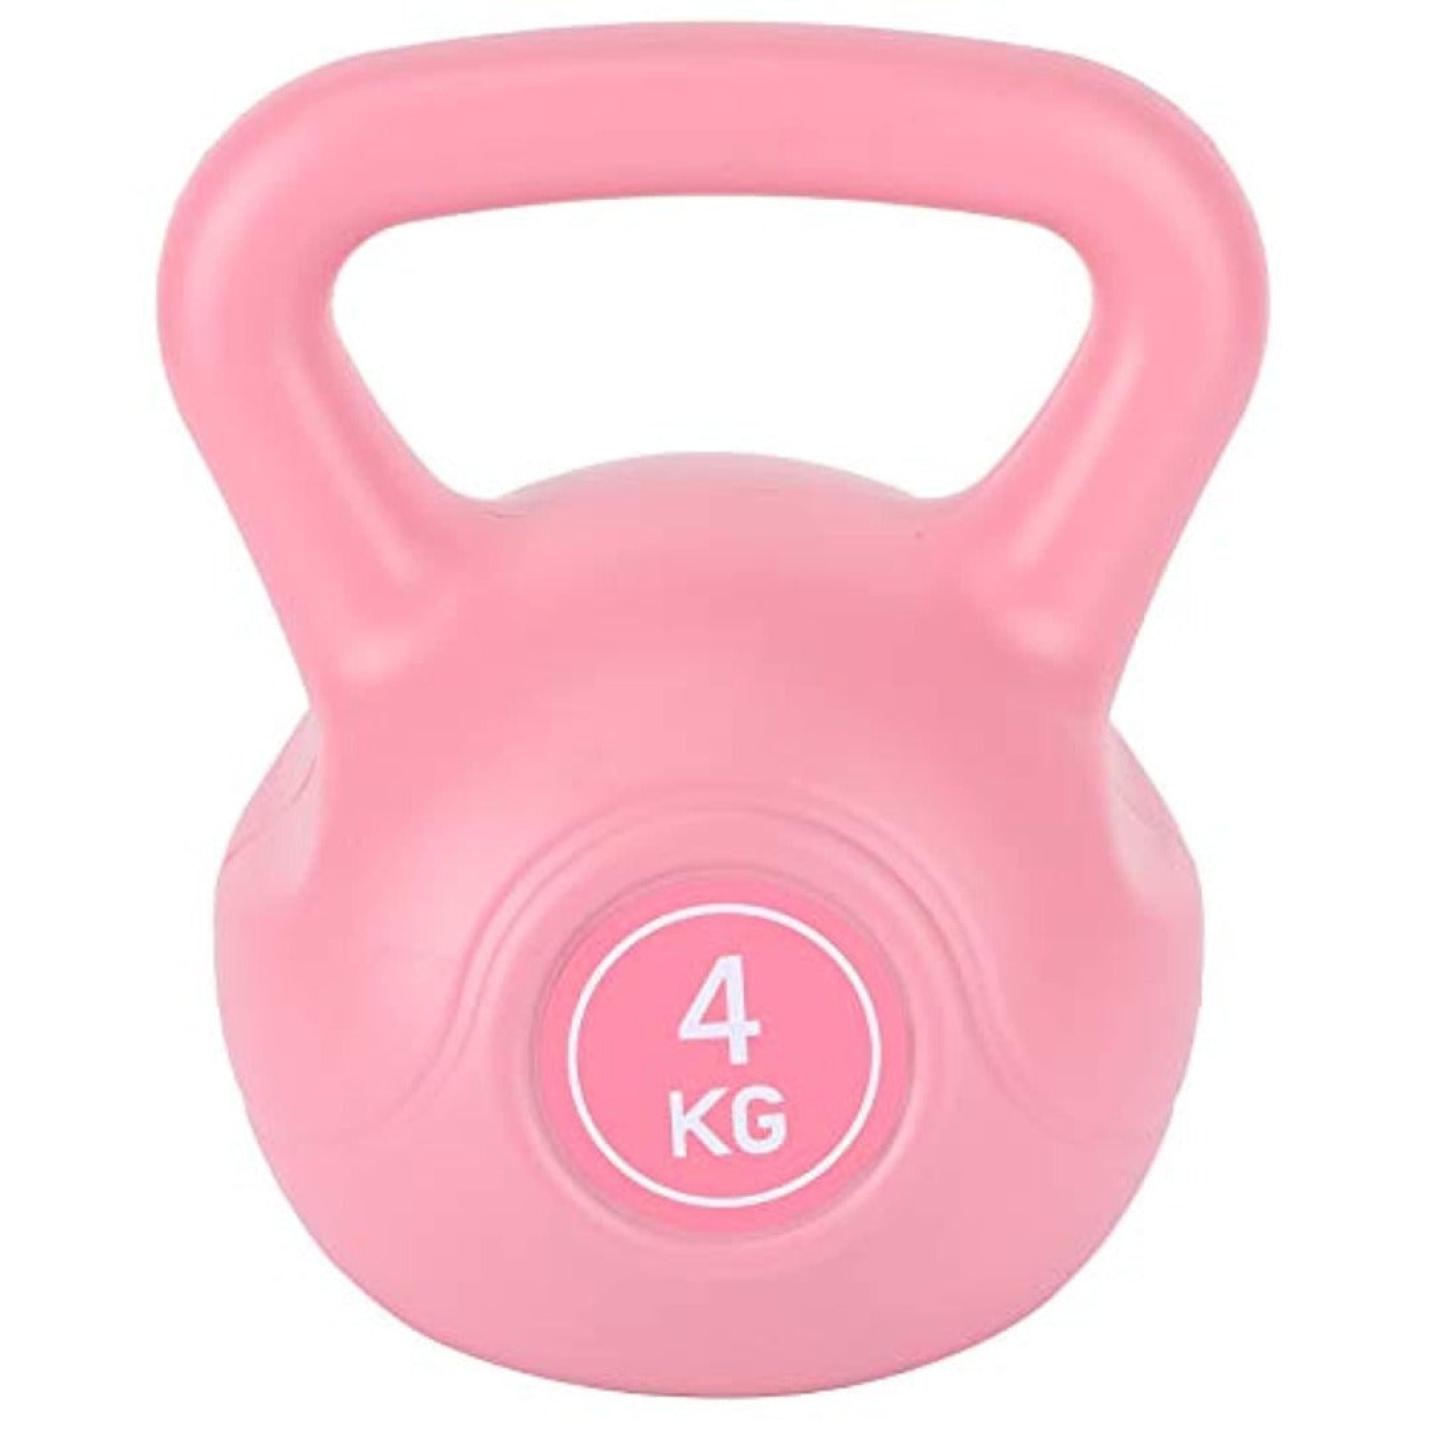 Kettlebell van 4 kg voor fitness training